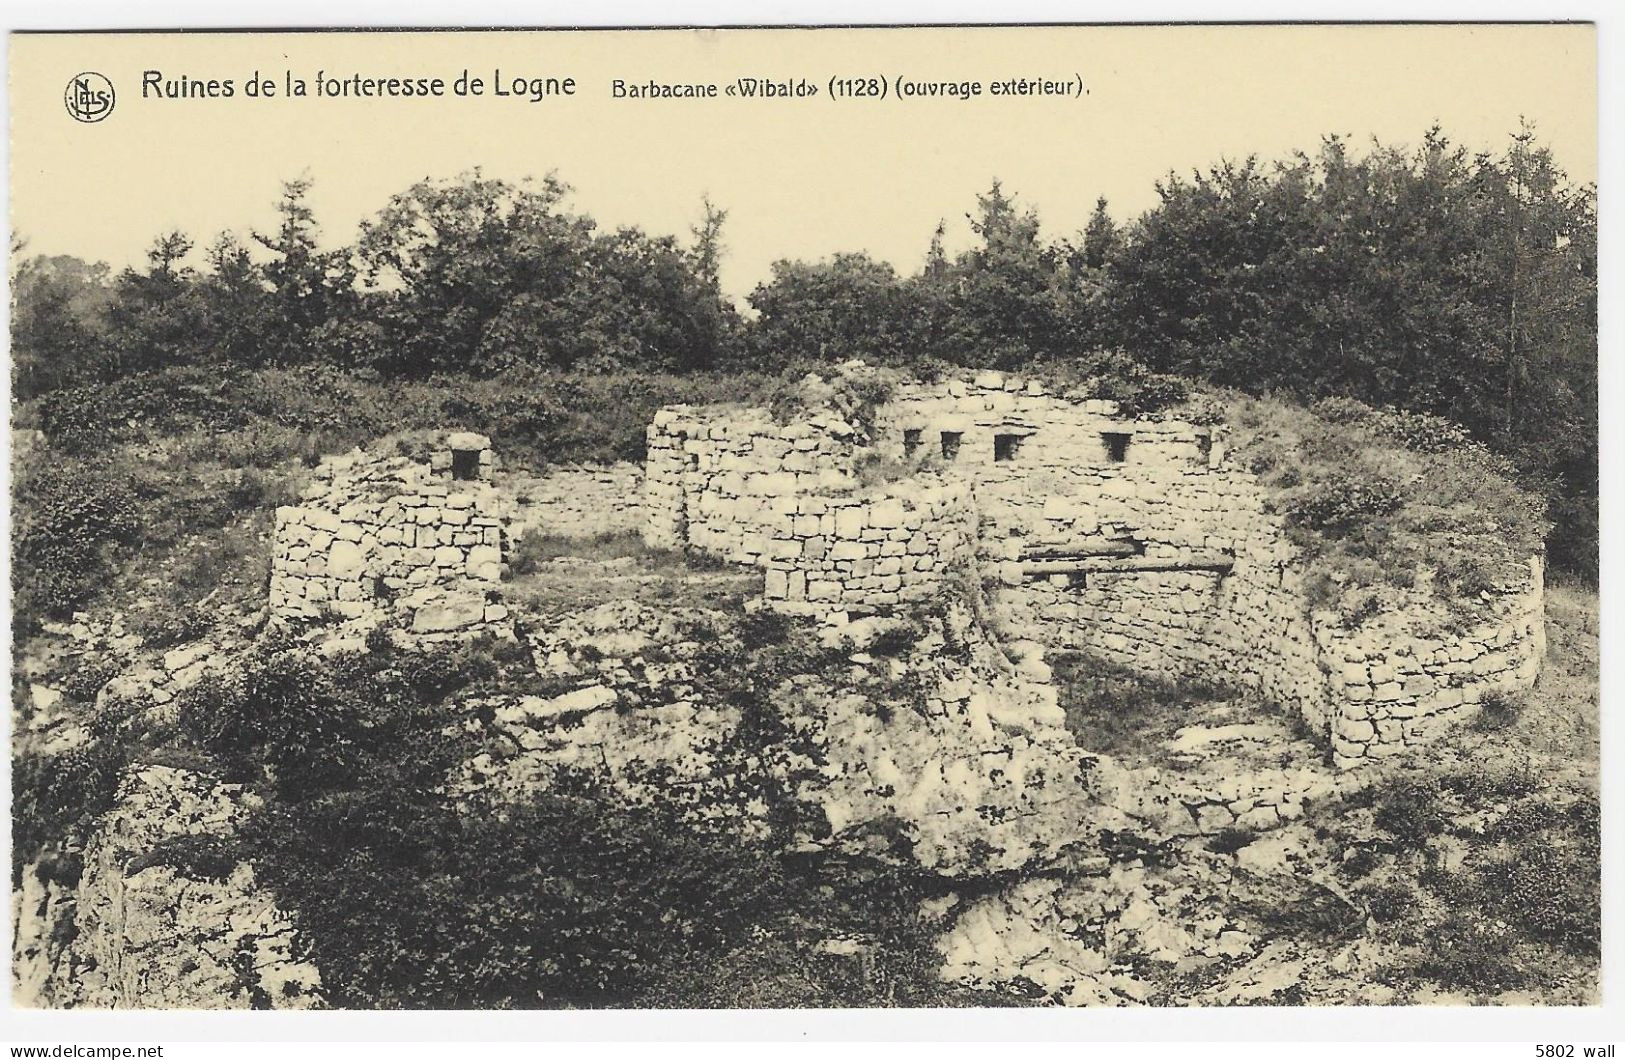 FERRIERES-LOGNE : Ruines De La Forteresse - Barbacane "Wibald" (1128 - Ouvrage Extérieur) - Ferrieres